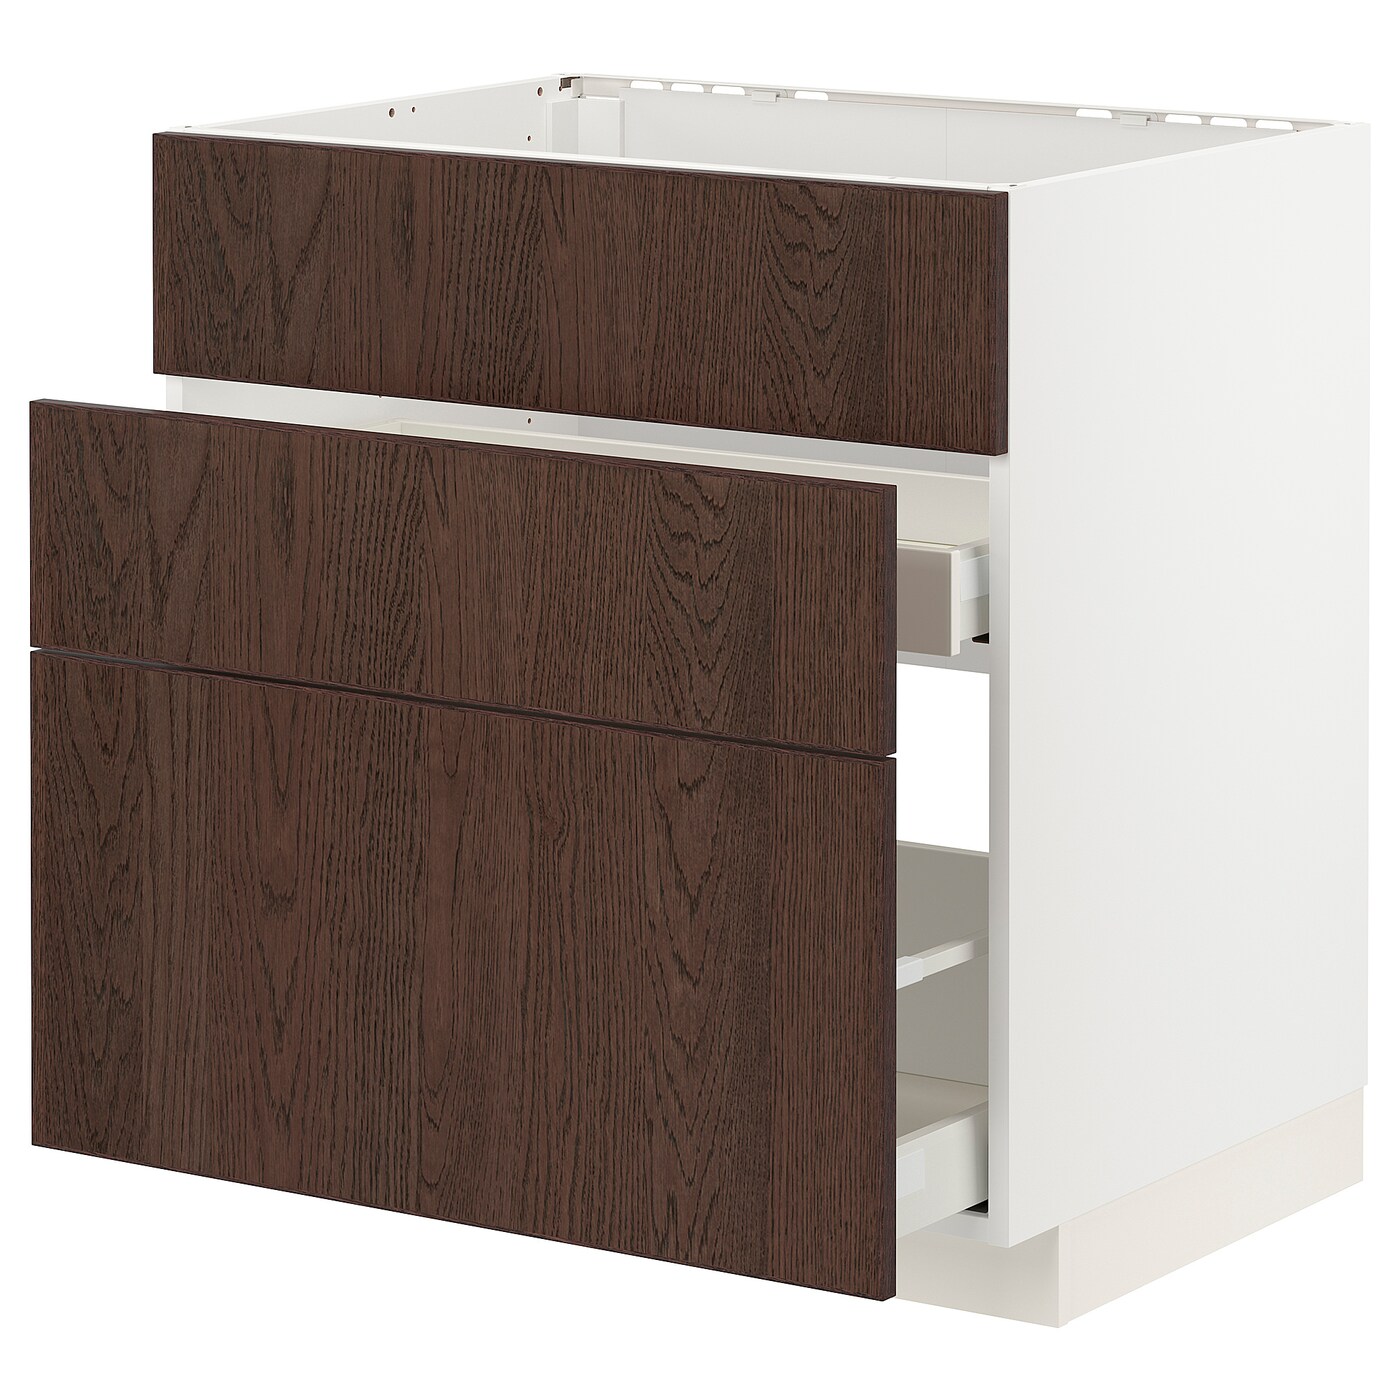 Напольный кухонный шкаф  - IKEA METOD MAXIMERA, 88x61,6x80см, белый/темно-коричневый, МЕТОД МАКСИМЕРА ИКЕА